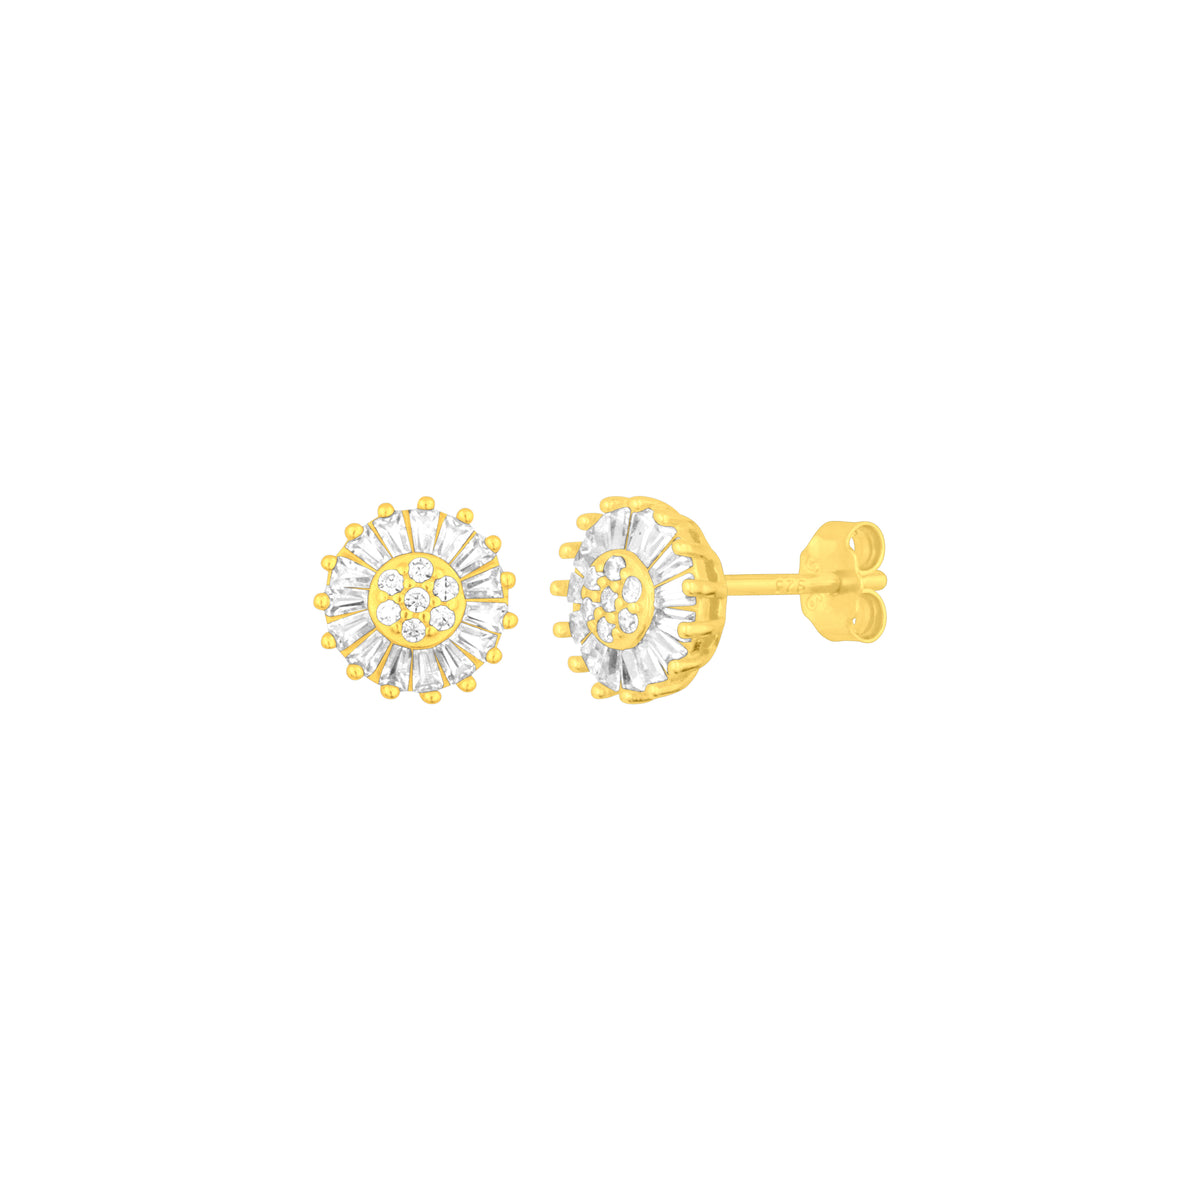 ruby emerald earrings|gold earrings|gold earrings|gold earrings online|gold  earrings for women|gold stud|earrings|ruby and emera